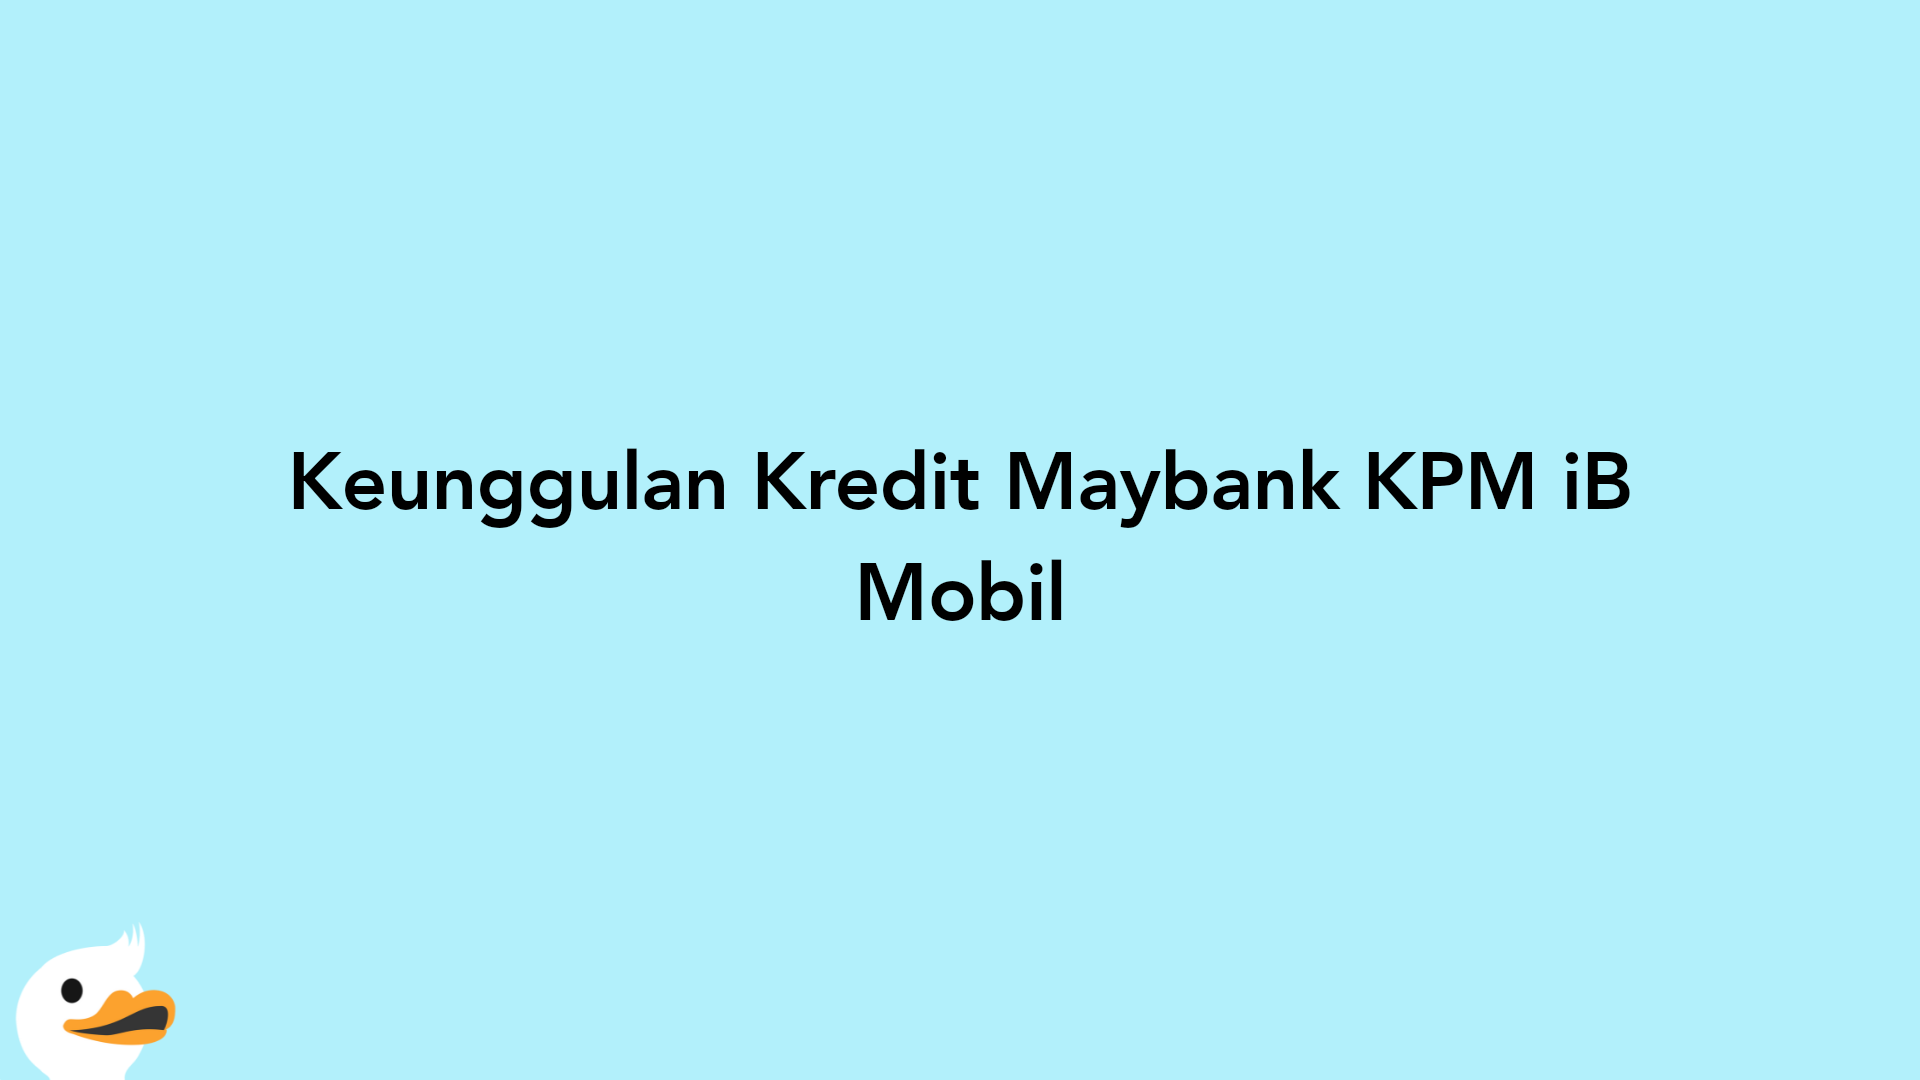 Keunggulan Kredit Maybank KPM iB Mobil